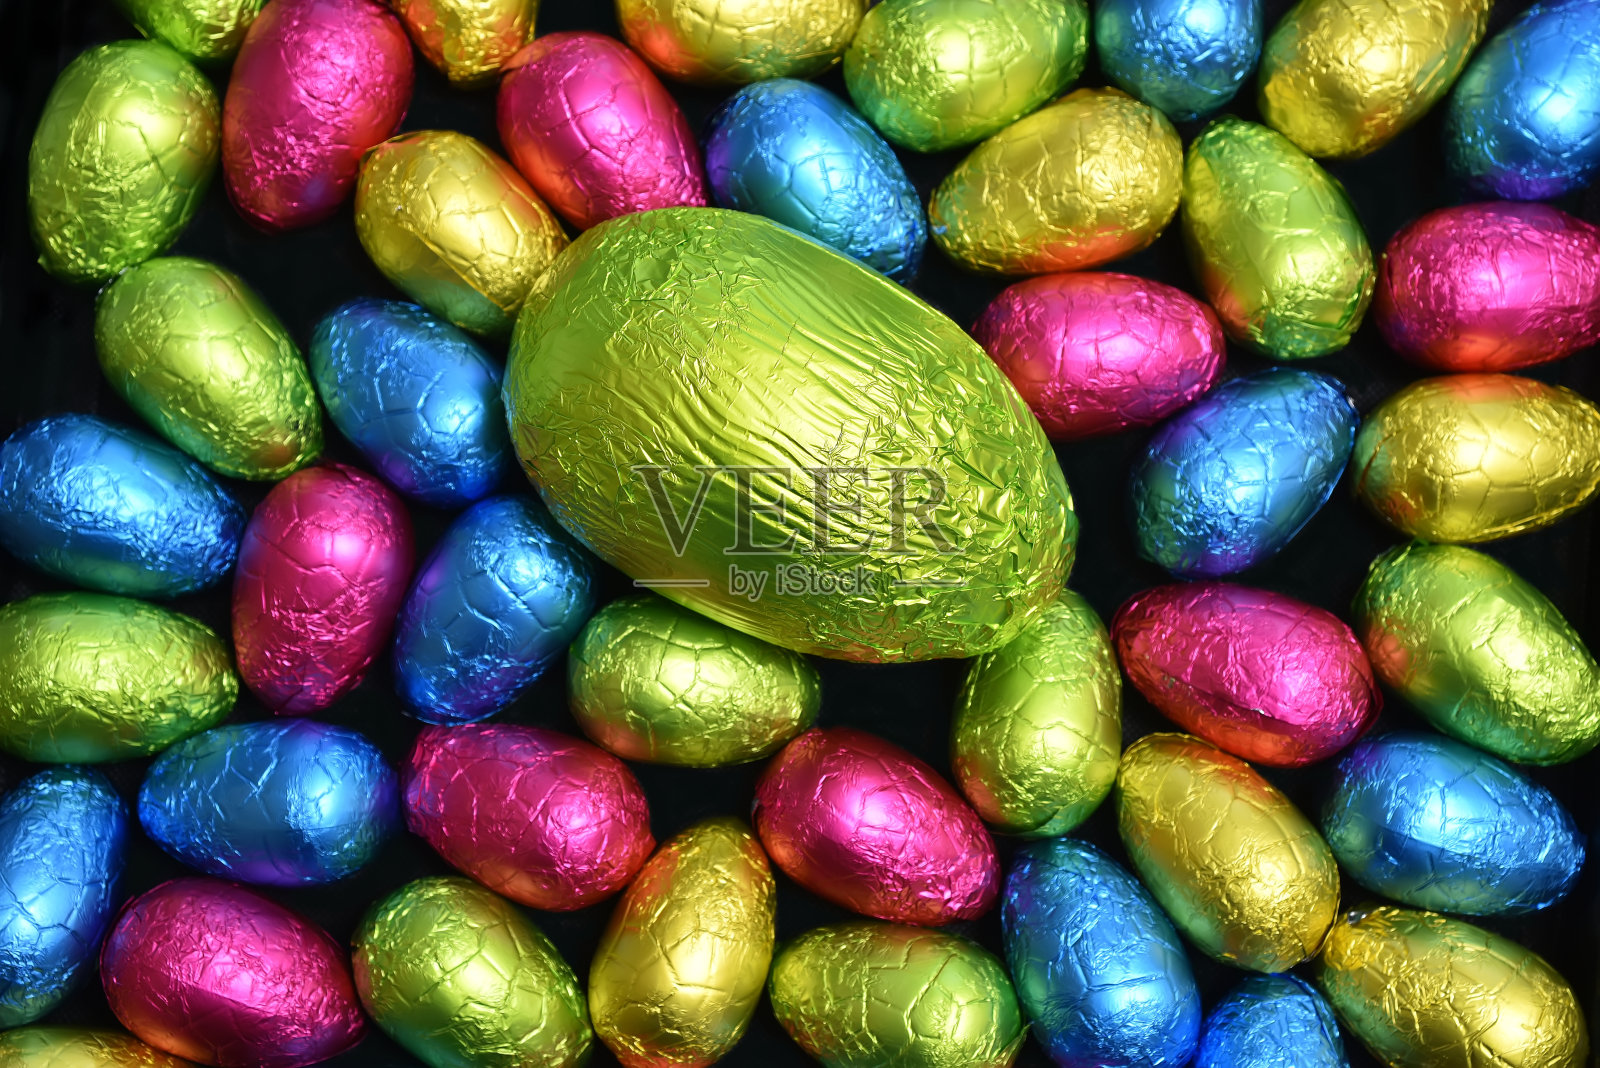 1 .用锡箔纸包裹一堆或一组各种颜色、不同大小的巧克力复活节彩蛋，彩蛋的颜色有粉色、蓝色、黄色和酸橙绿，中间放一个绿色的大鸡蛋。照片摄影图片